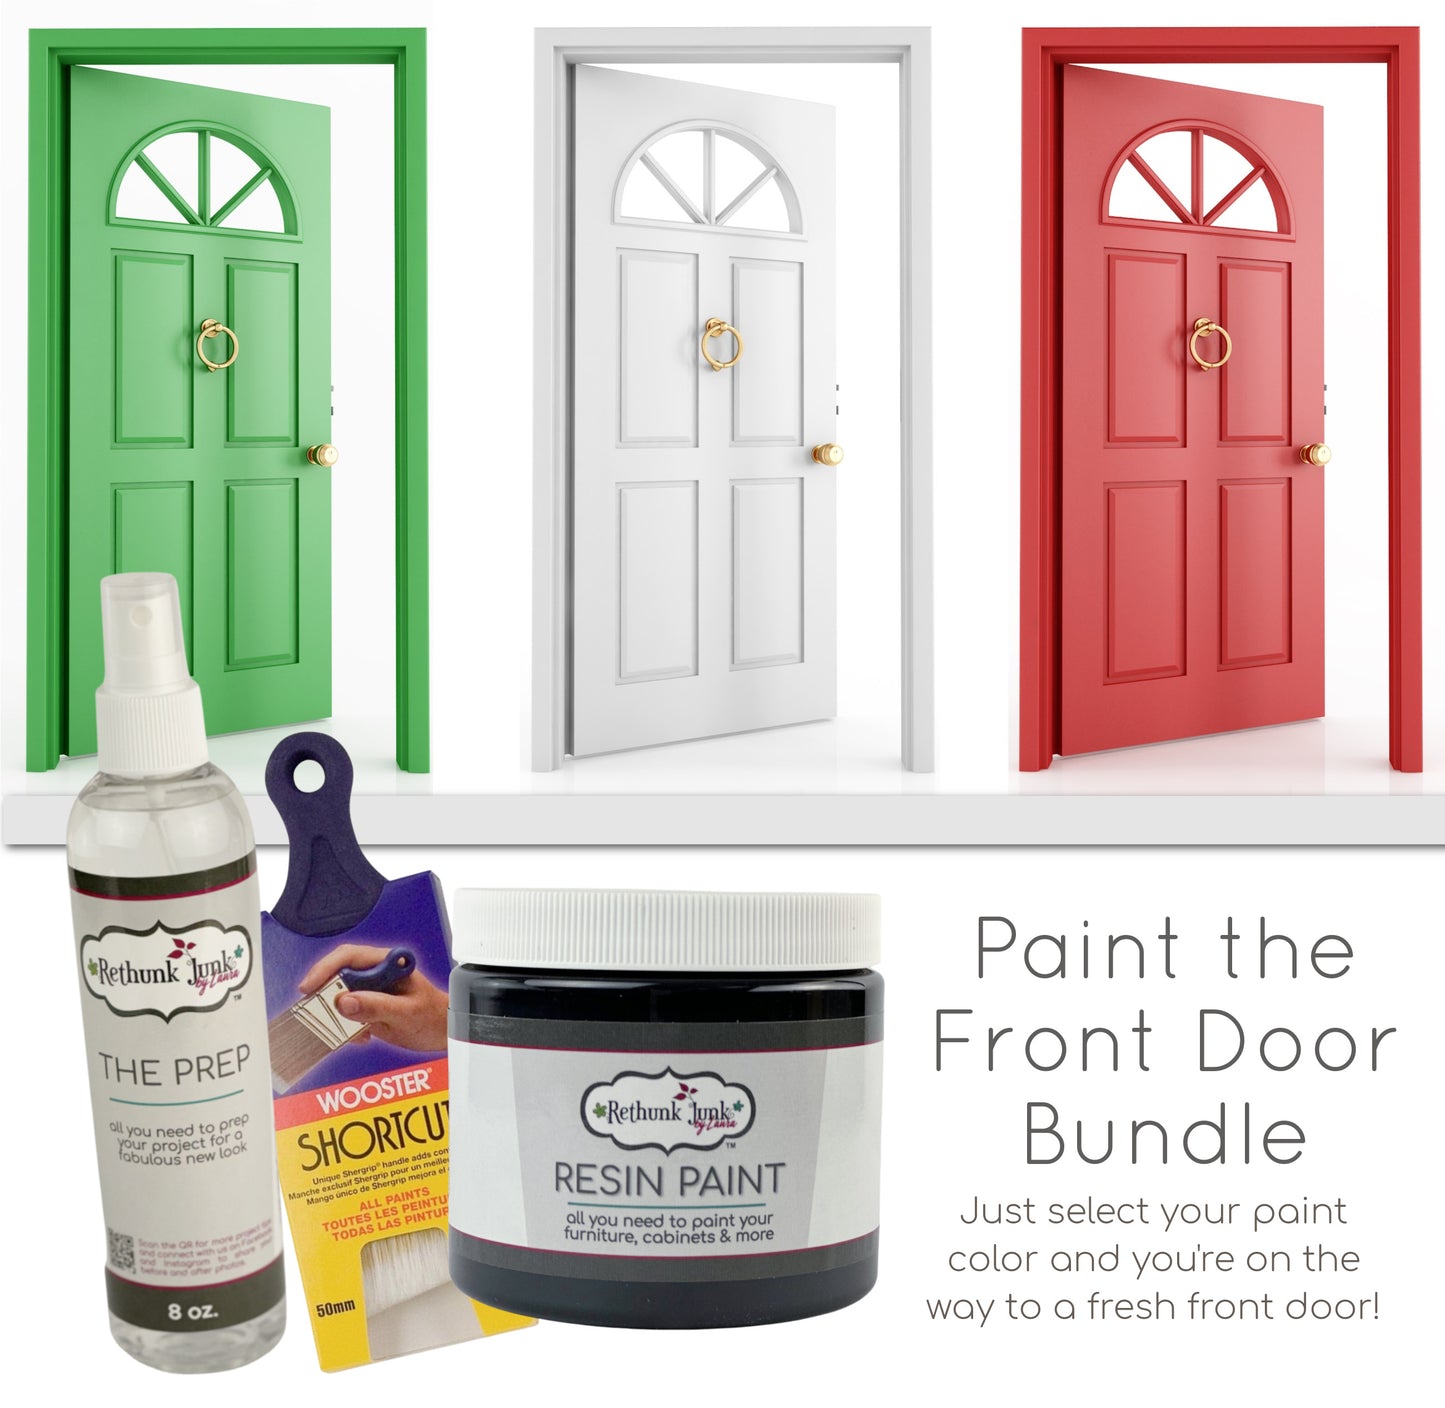 Paint the Front Door Bundle